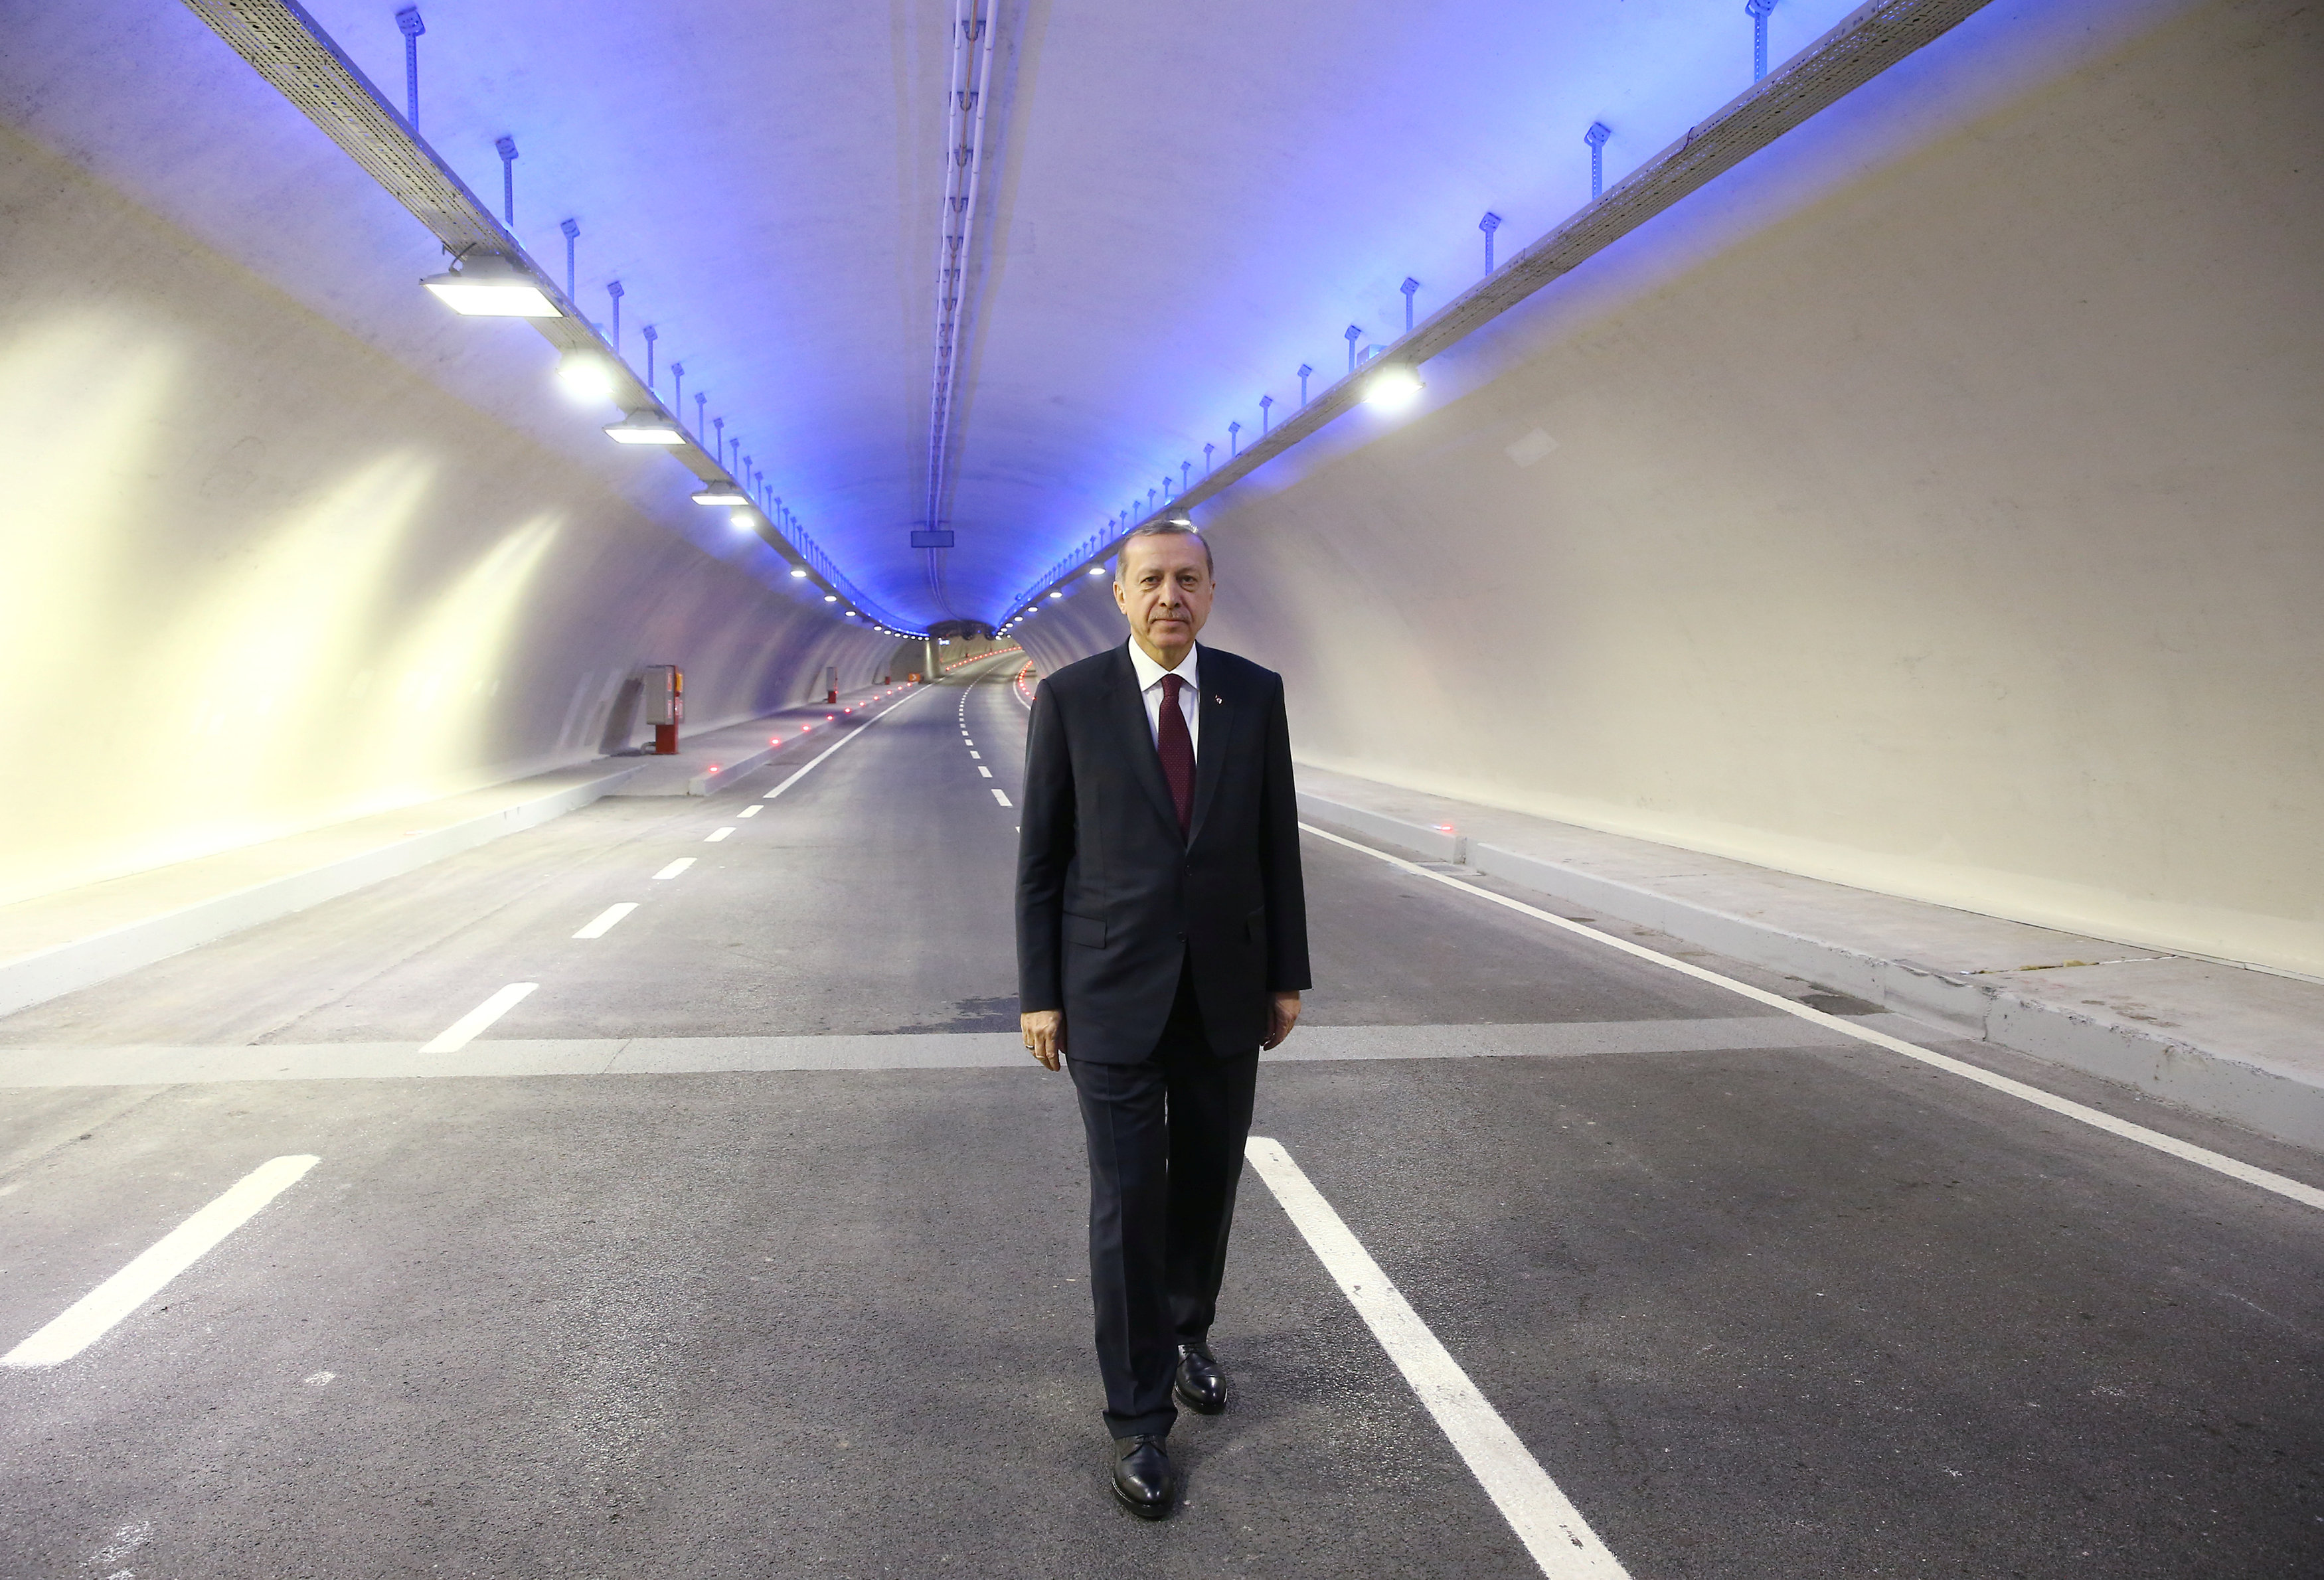 Θέλουν το χάος στην Τουρκία, λέει ο Ερντογάν για το μακελειό